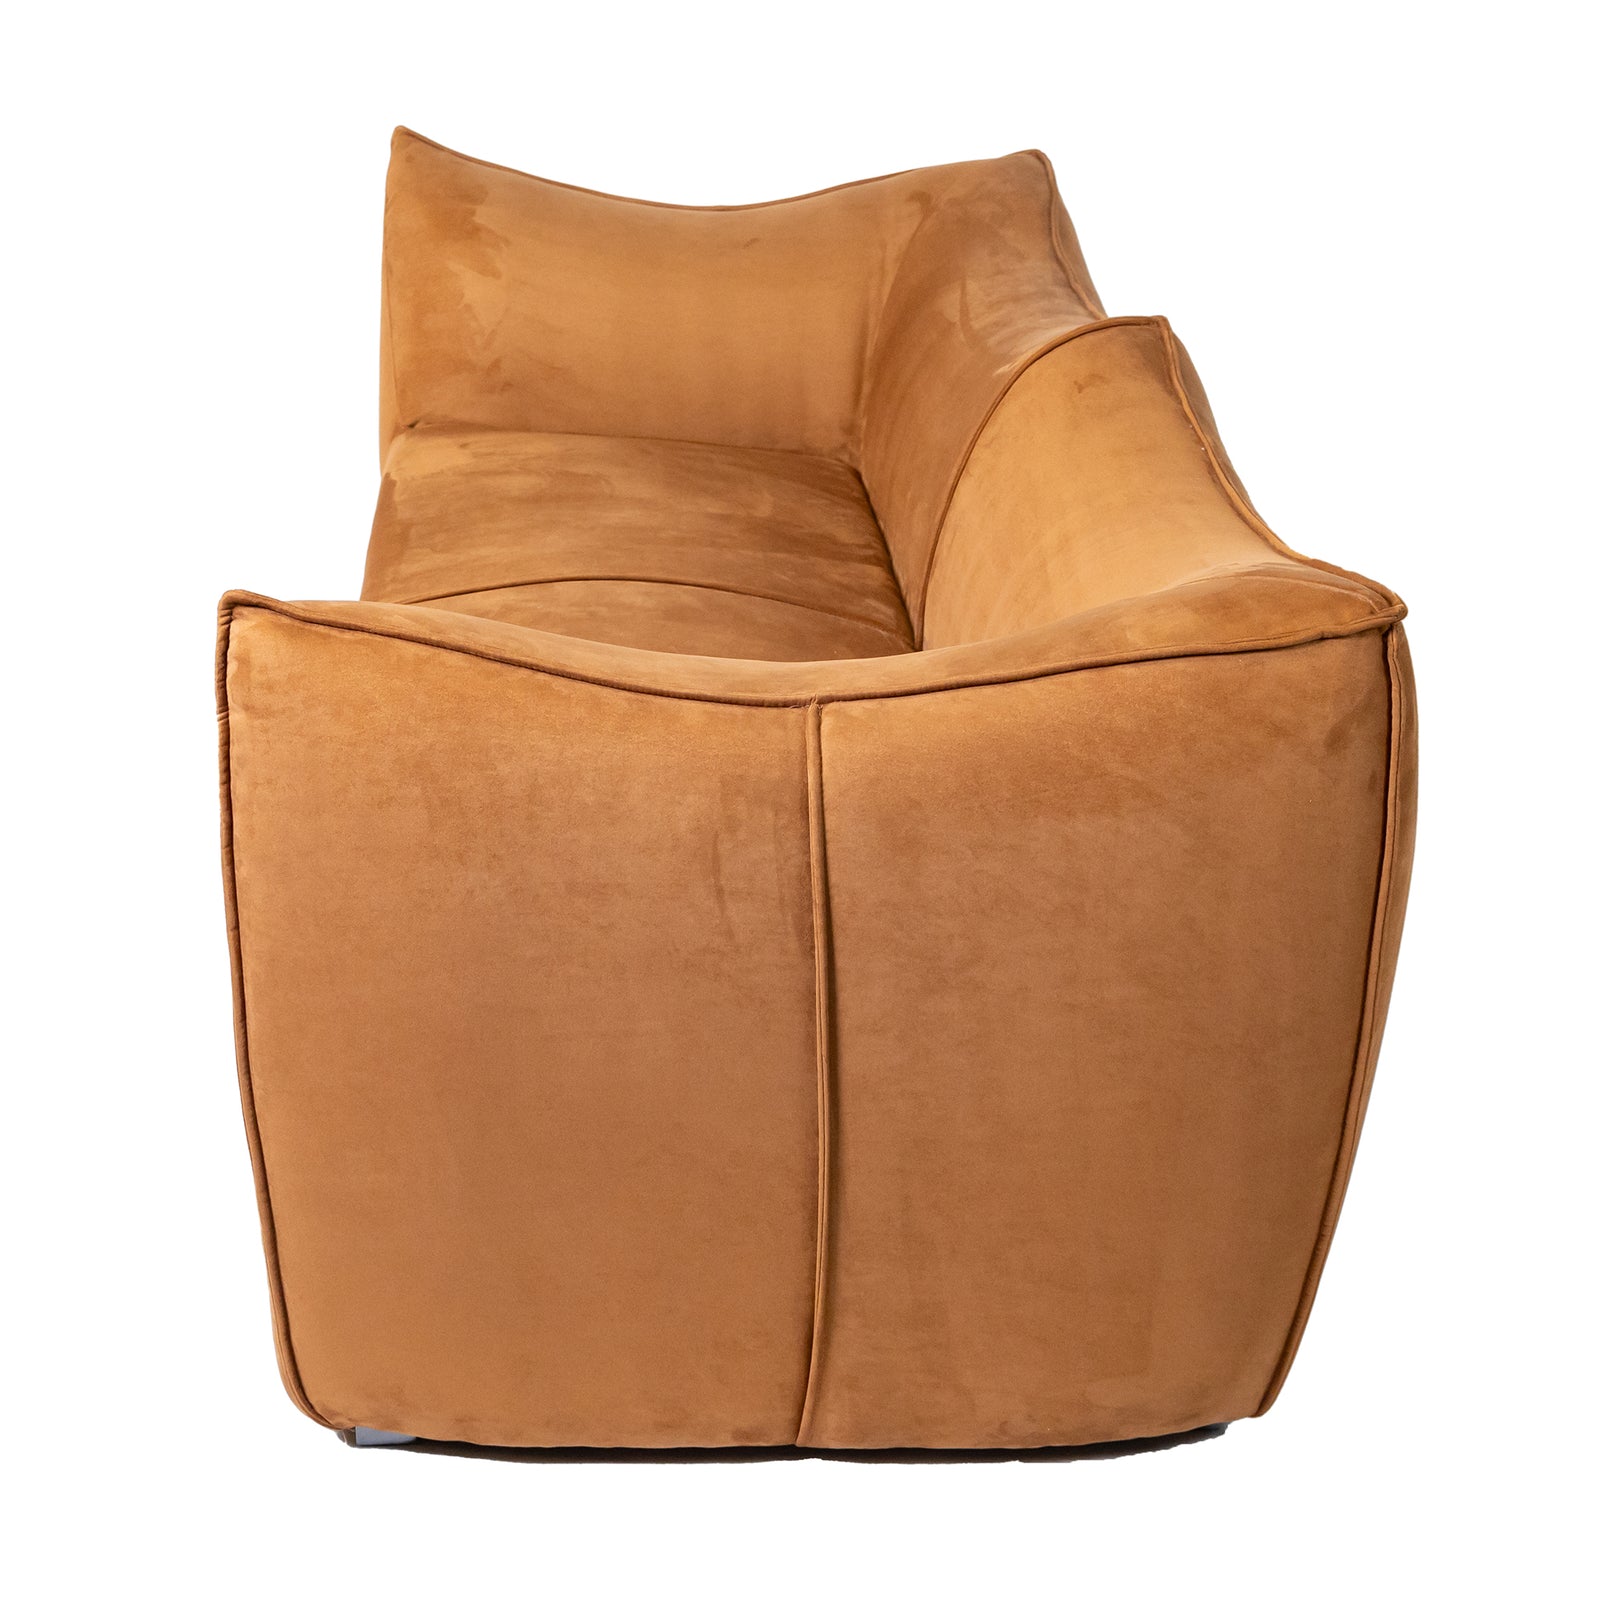 La Bambole Style 2 Seater Sofa Rusty Brown